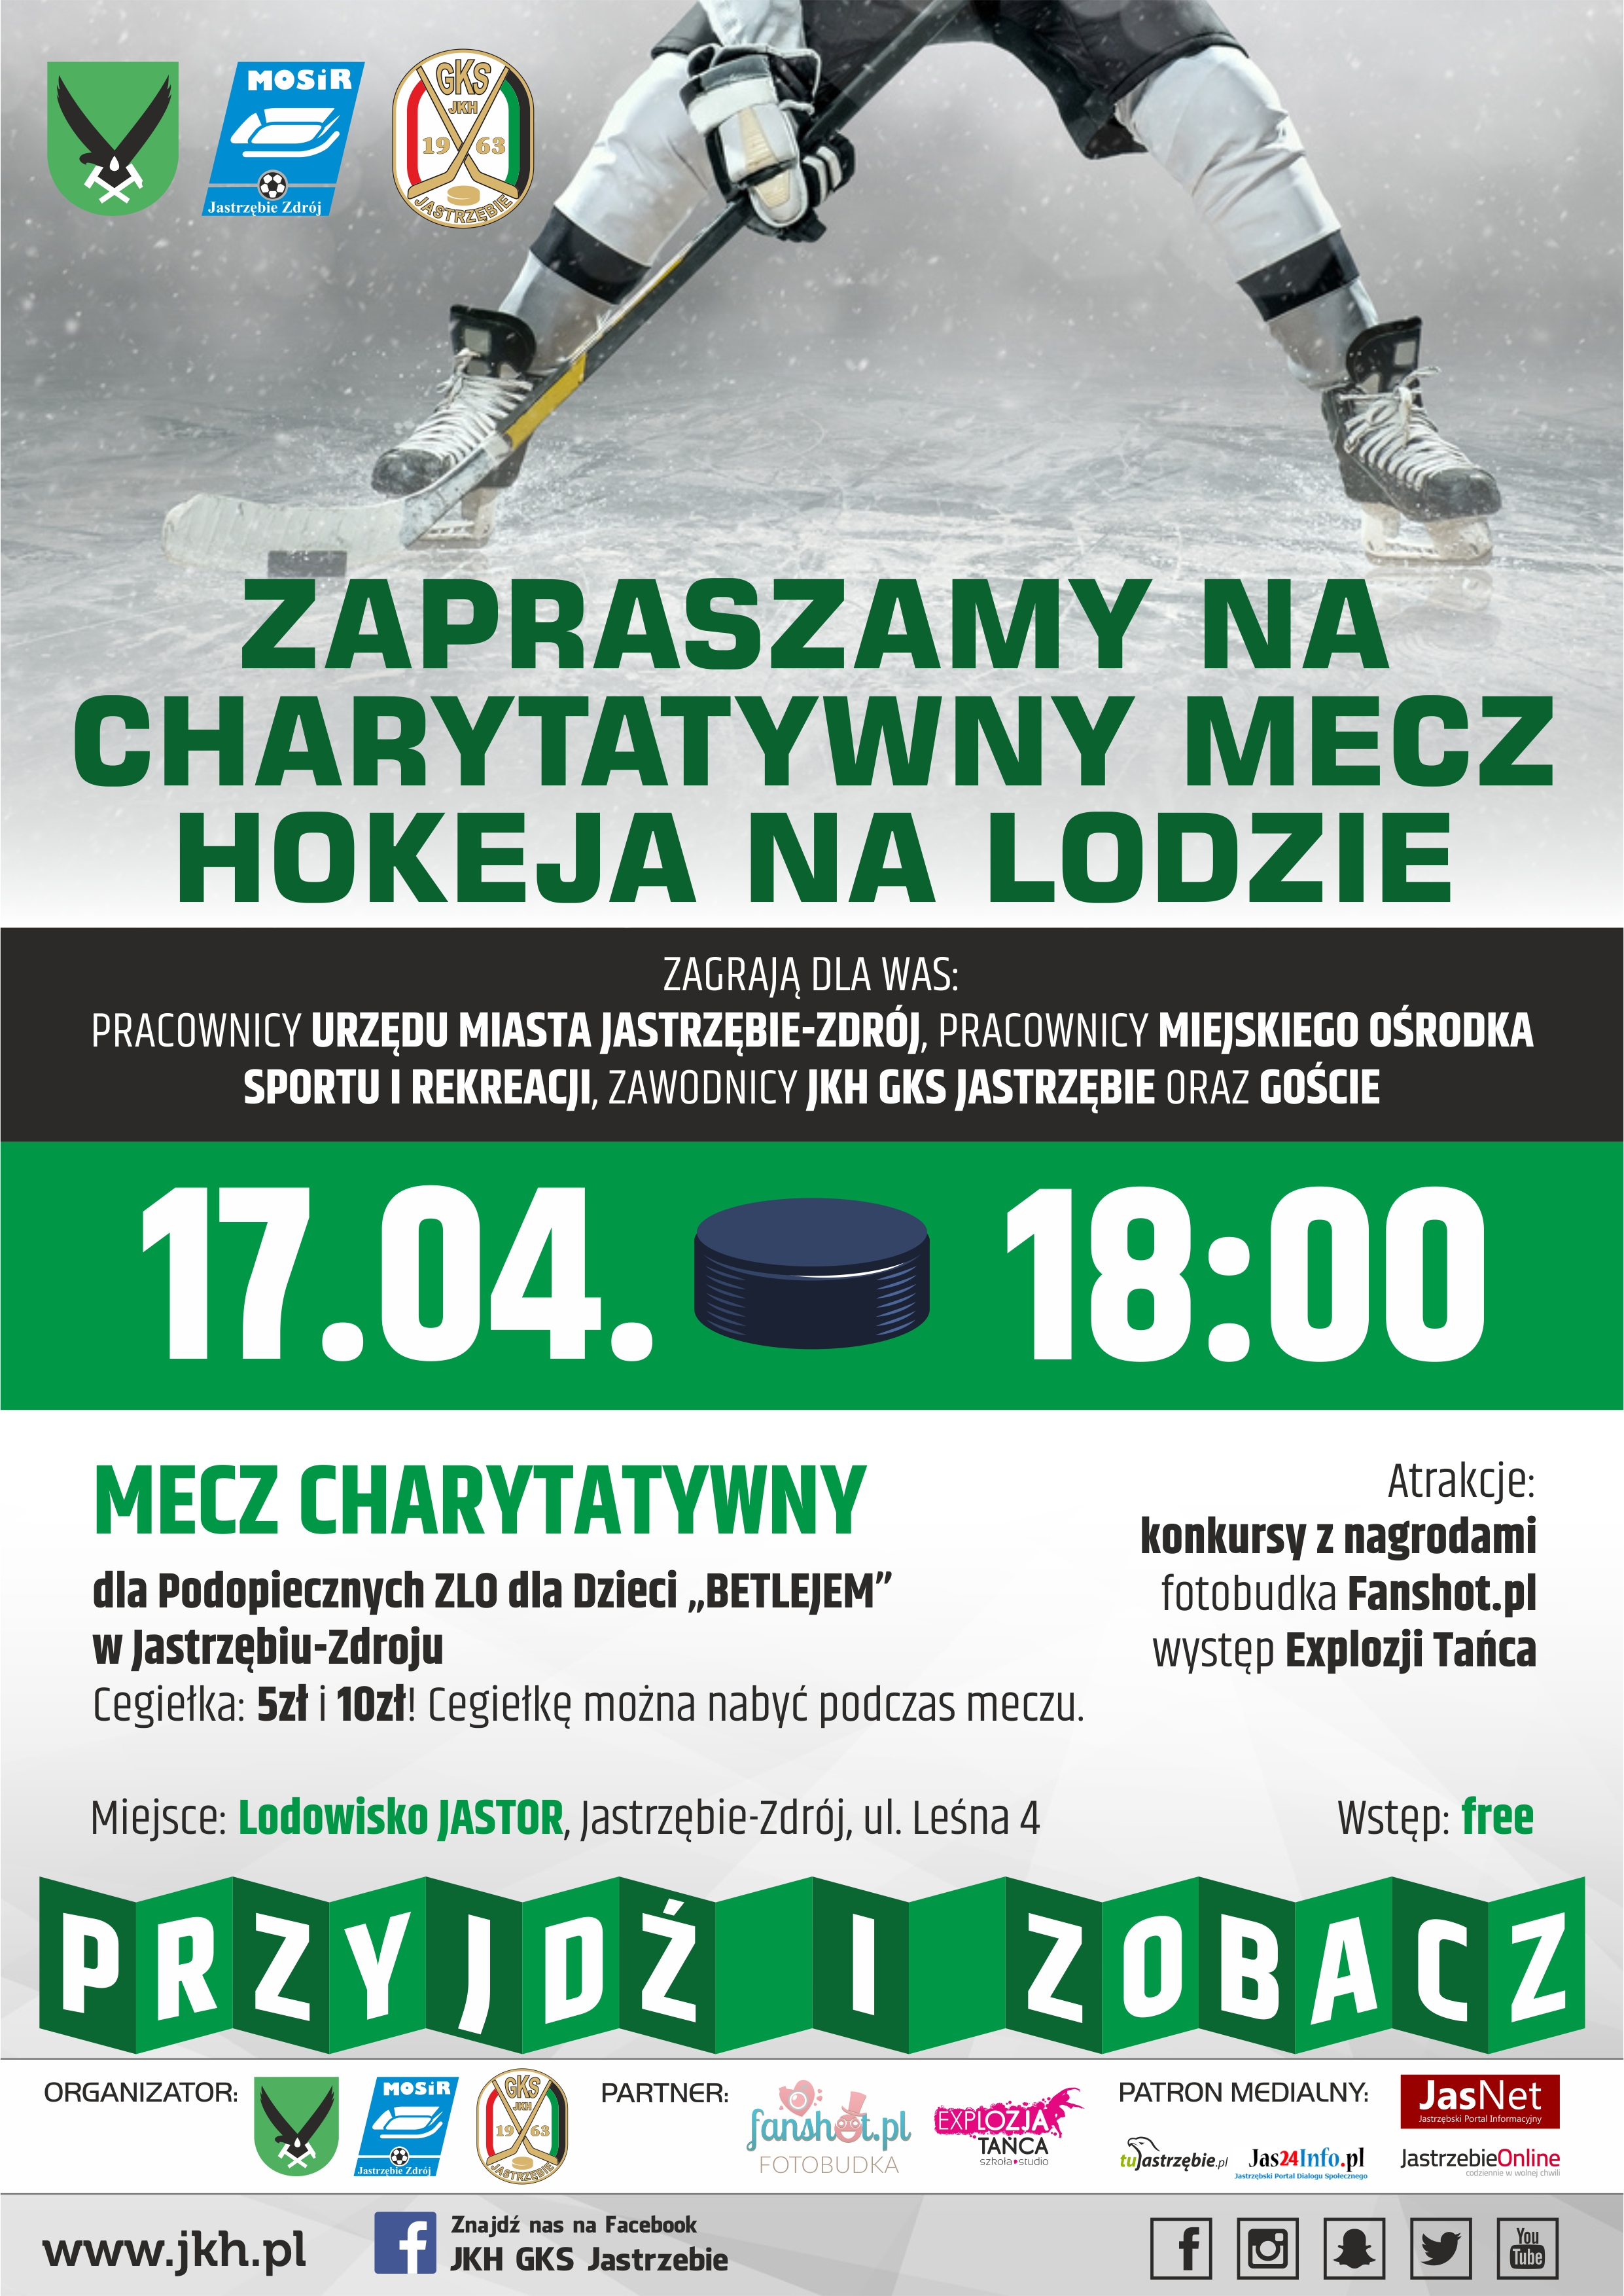 Plakat promujący charytatywny mecz z udziałem zawodników JKH GKS Jastrzębie